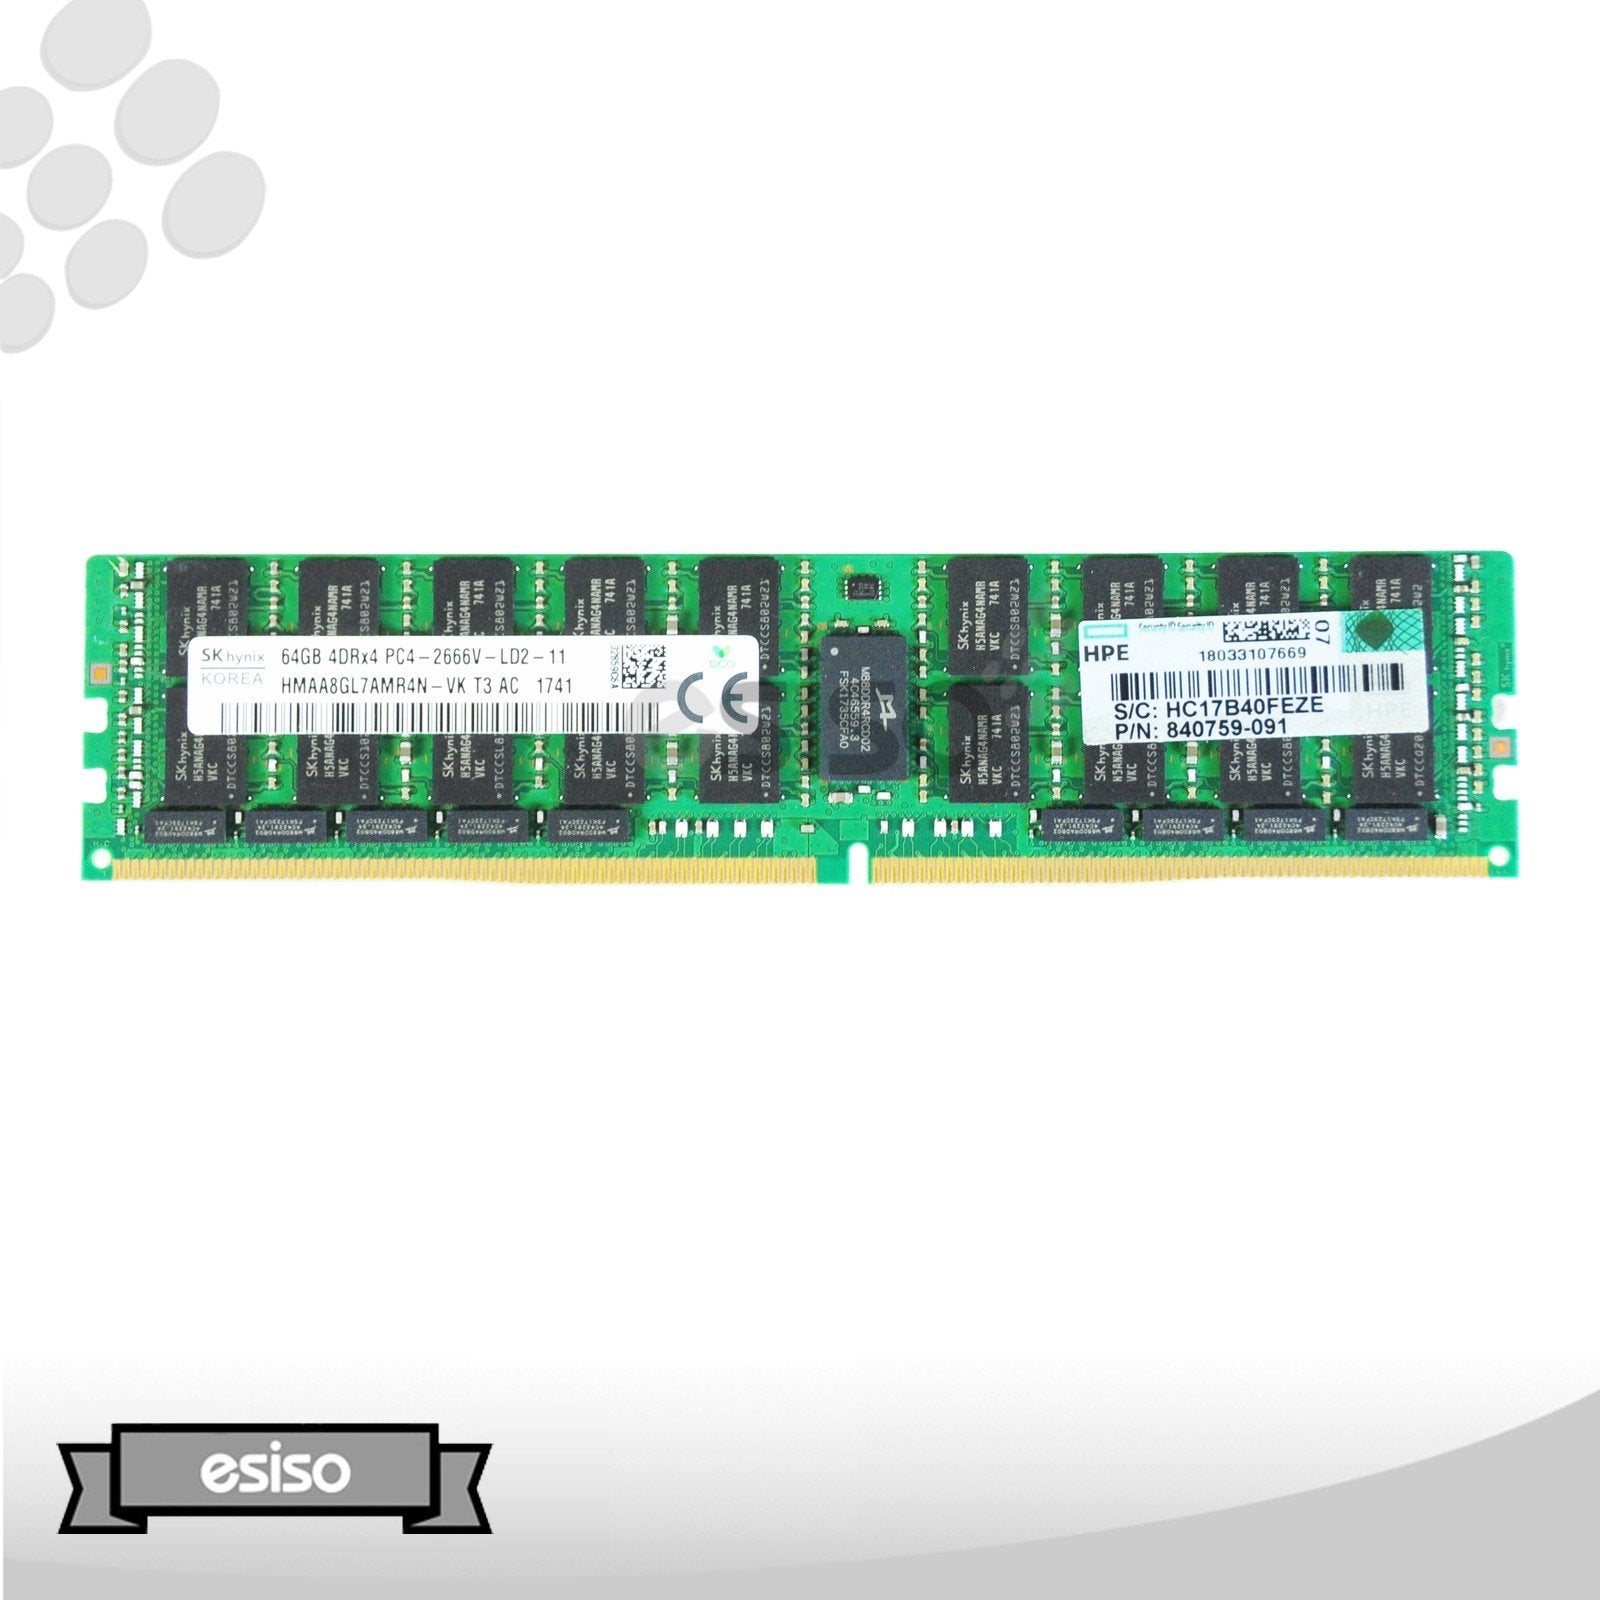 HMAA8GL7AMR4N-VK 840759-091 HPE 64GB 4DRX4 PC4-2666V-L MEMORY MODULE (1X64GB)